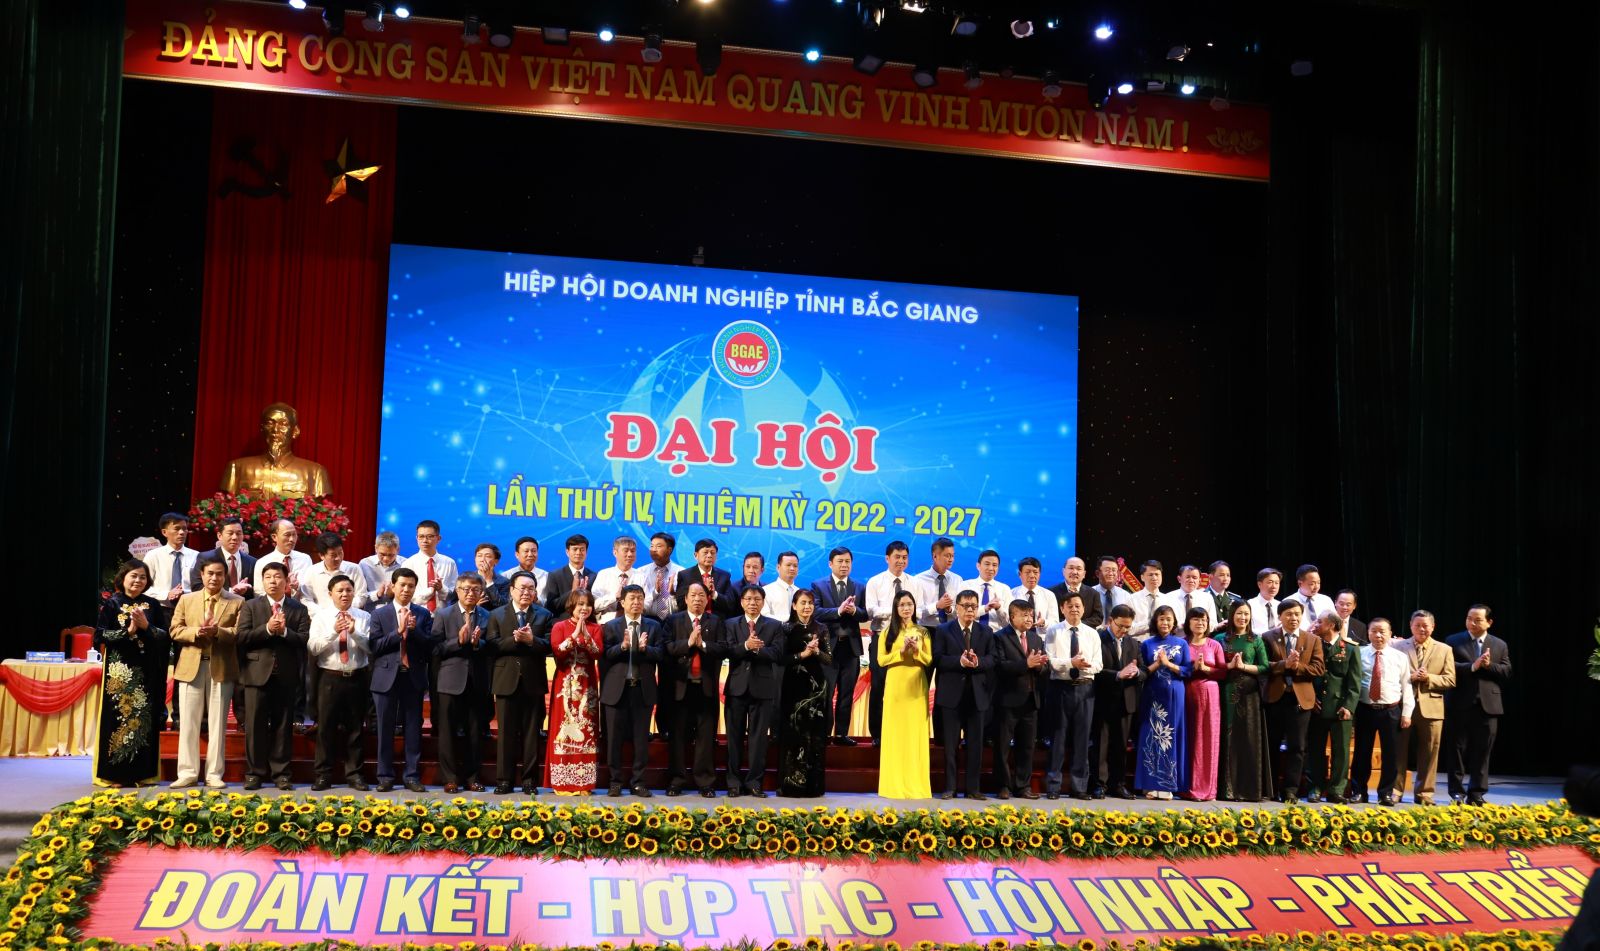 BCH Hiệp hội doanh nghiệp tỉnh Bắc Giang khóa IV ra mắt Đại hội.